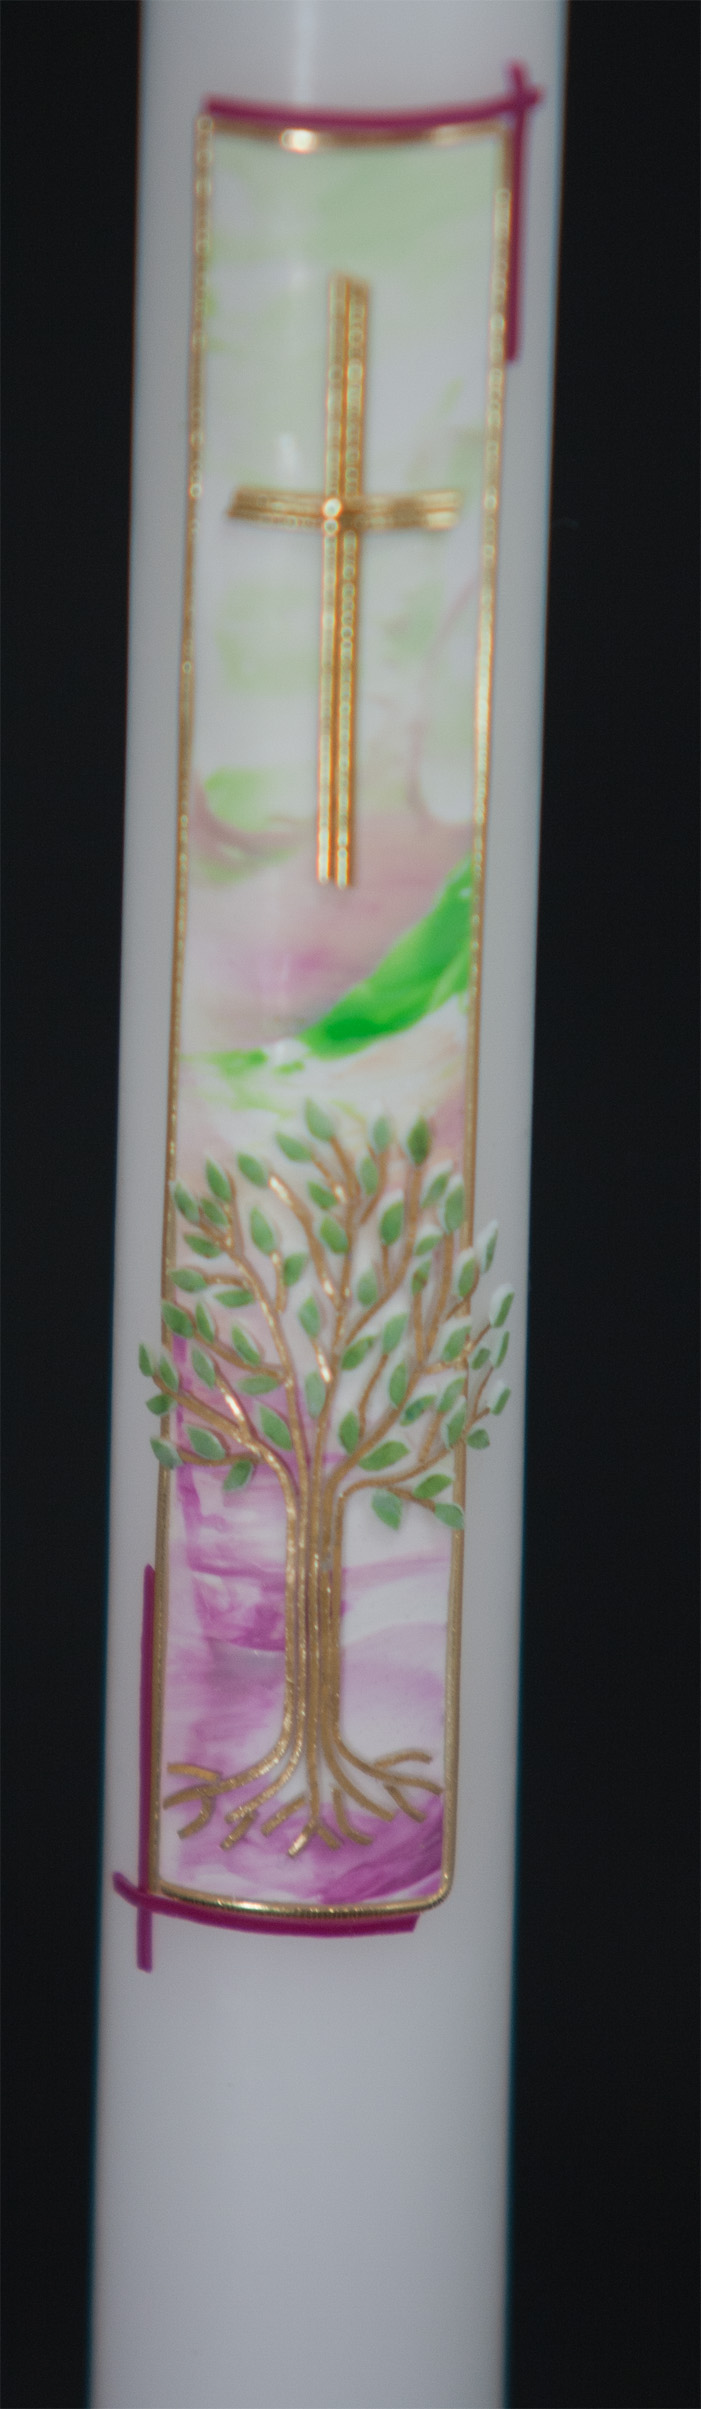 Besondere Taufkerze mit gemaltem Hintergrund in rosa-gruen mit kleinem Lebensbäumchen und Kreuz.